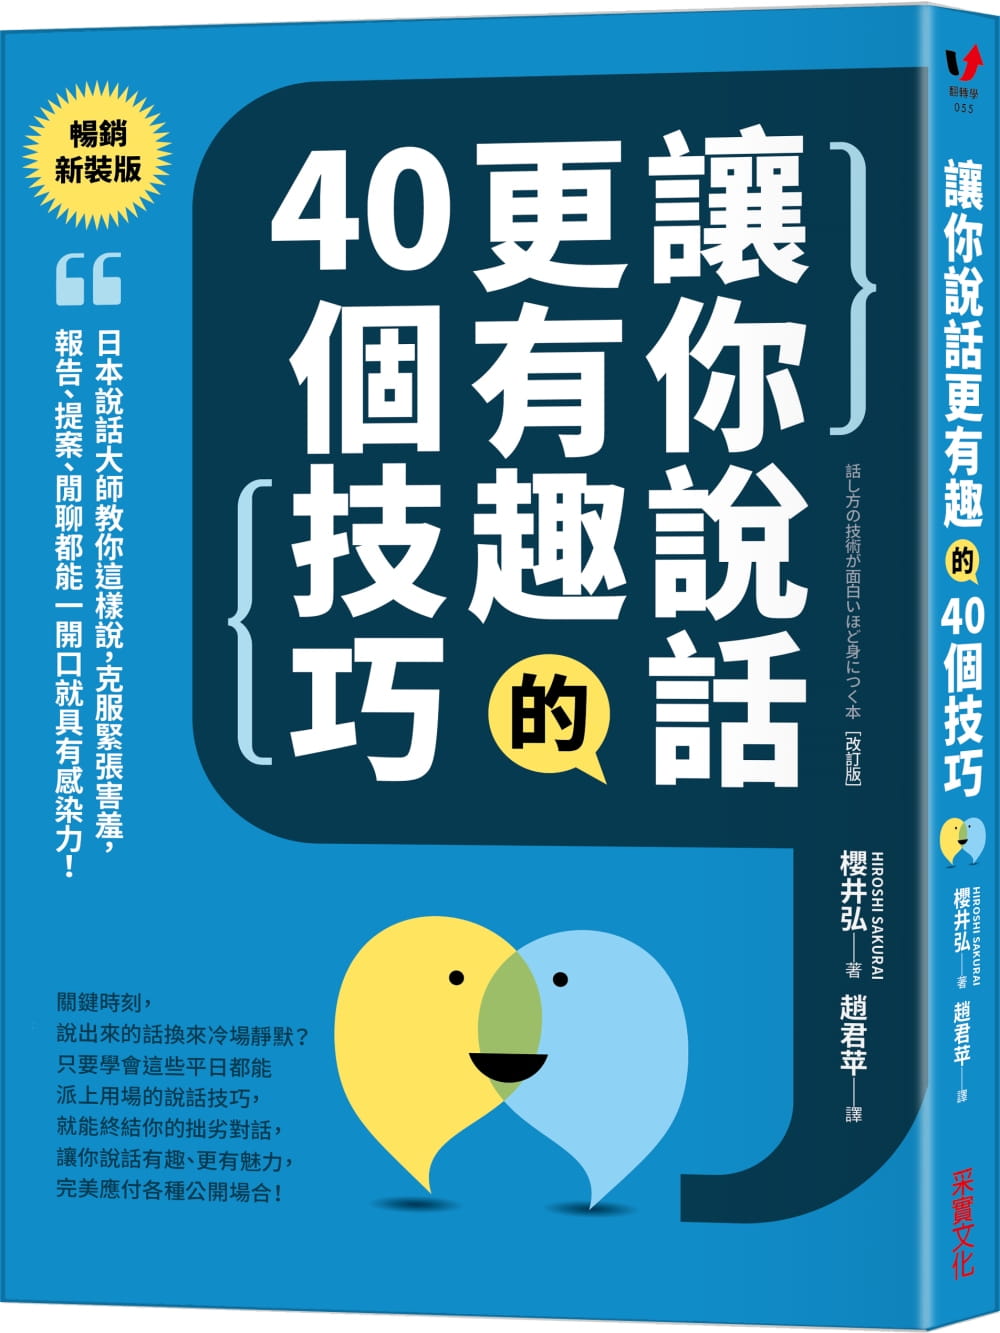 讓你說話更有趣的40個技巧：日本說話大師教你這樣說，克服緊張害羞，報告、提案、閒聊都能一開口就具有感染力！【暢銷新裝版】